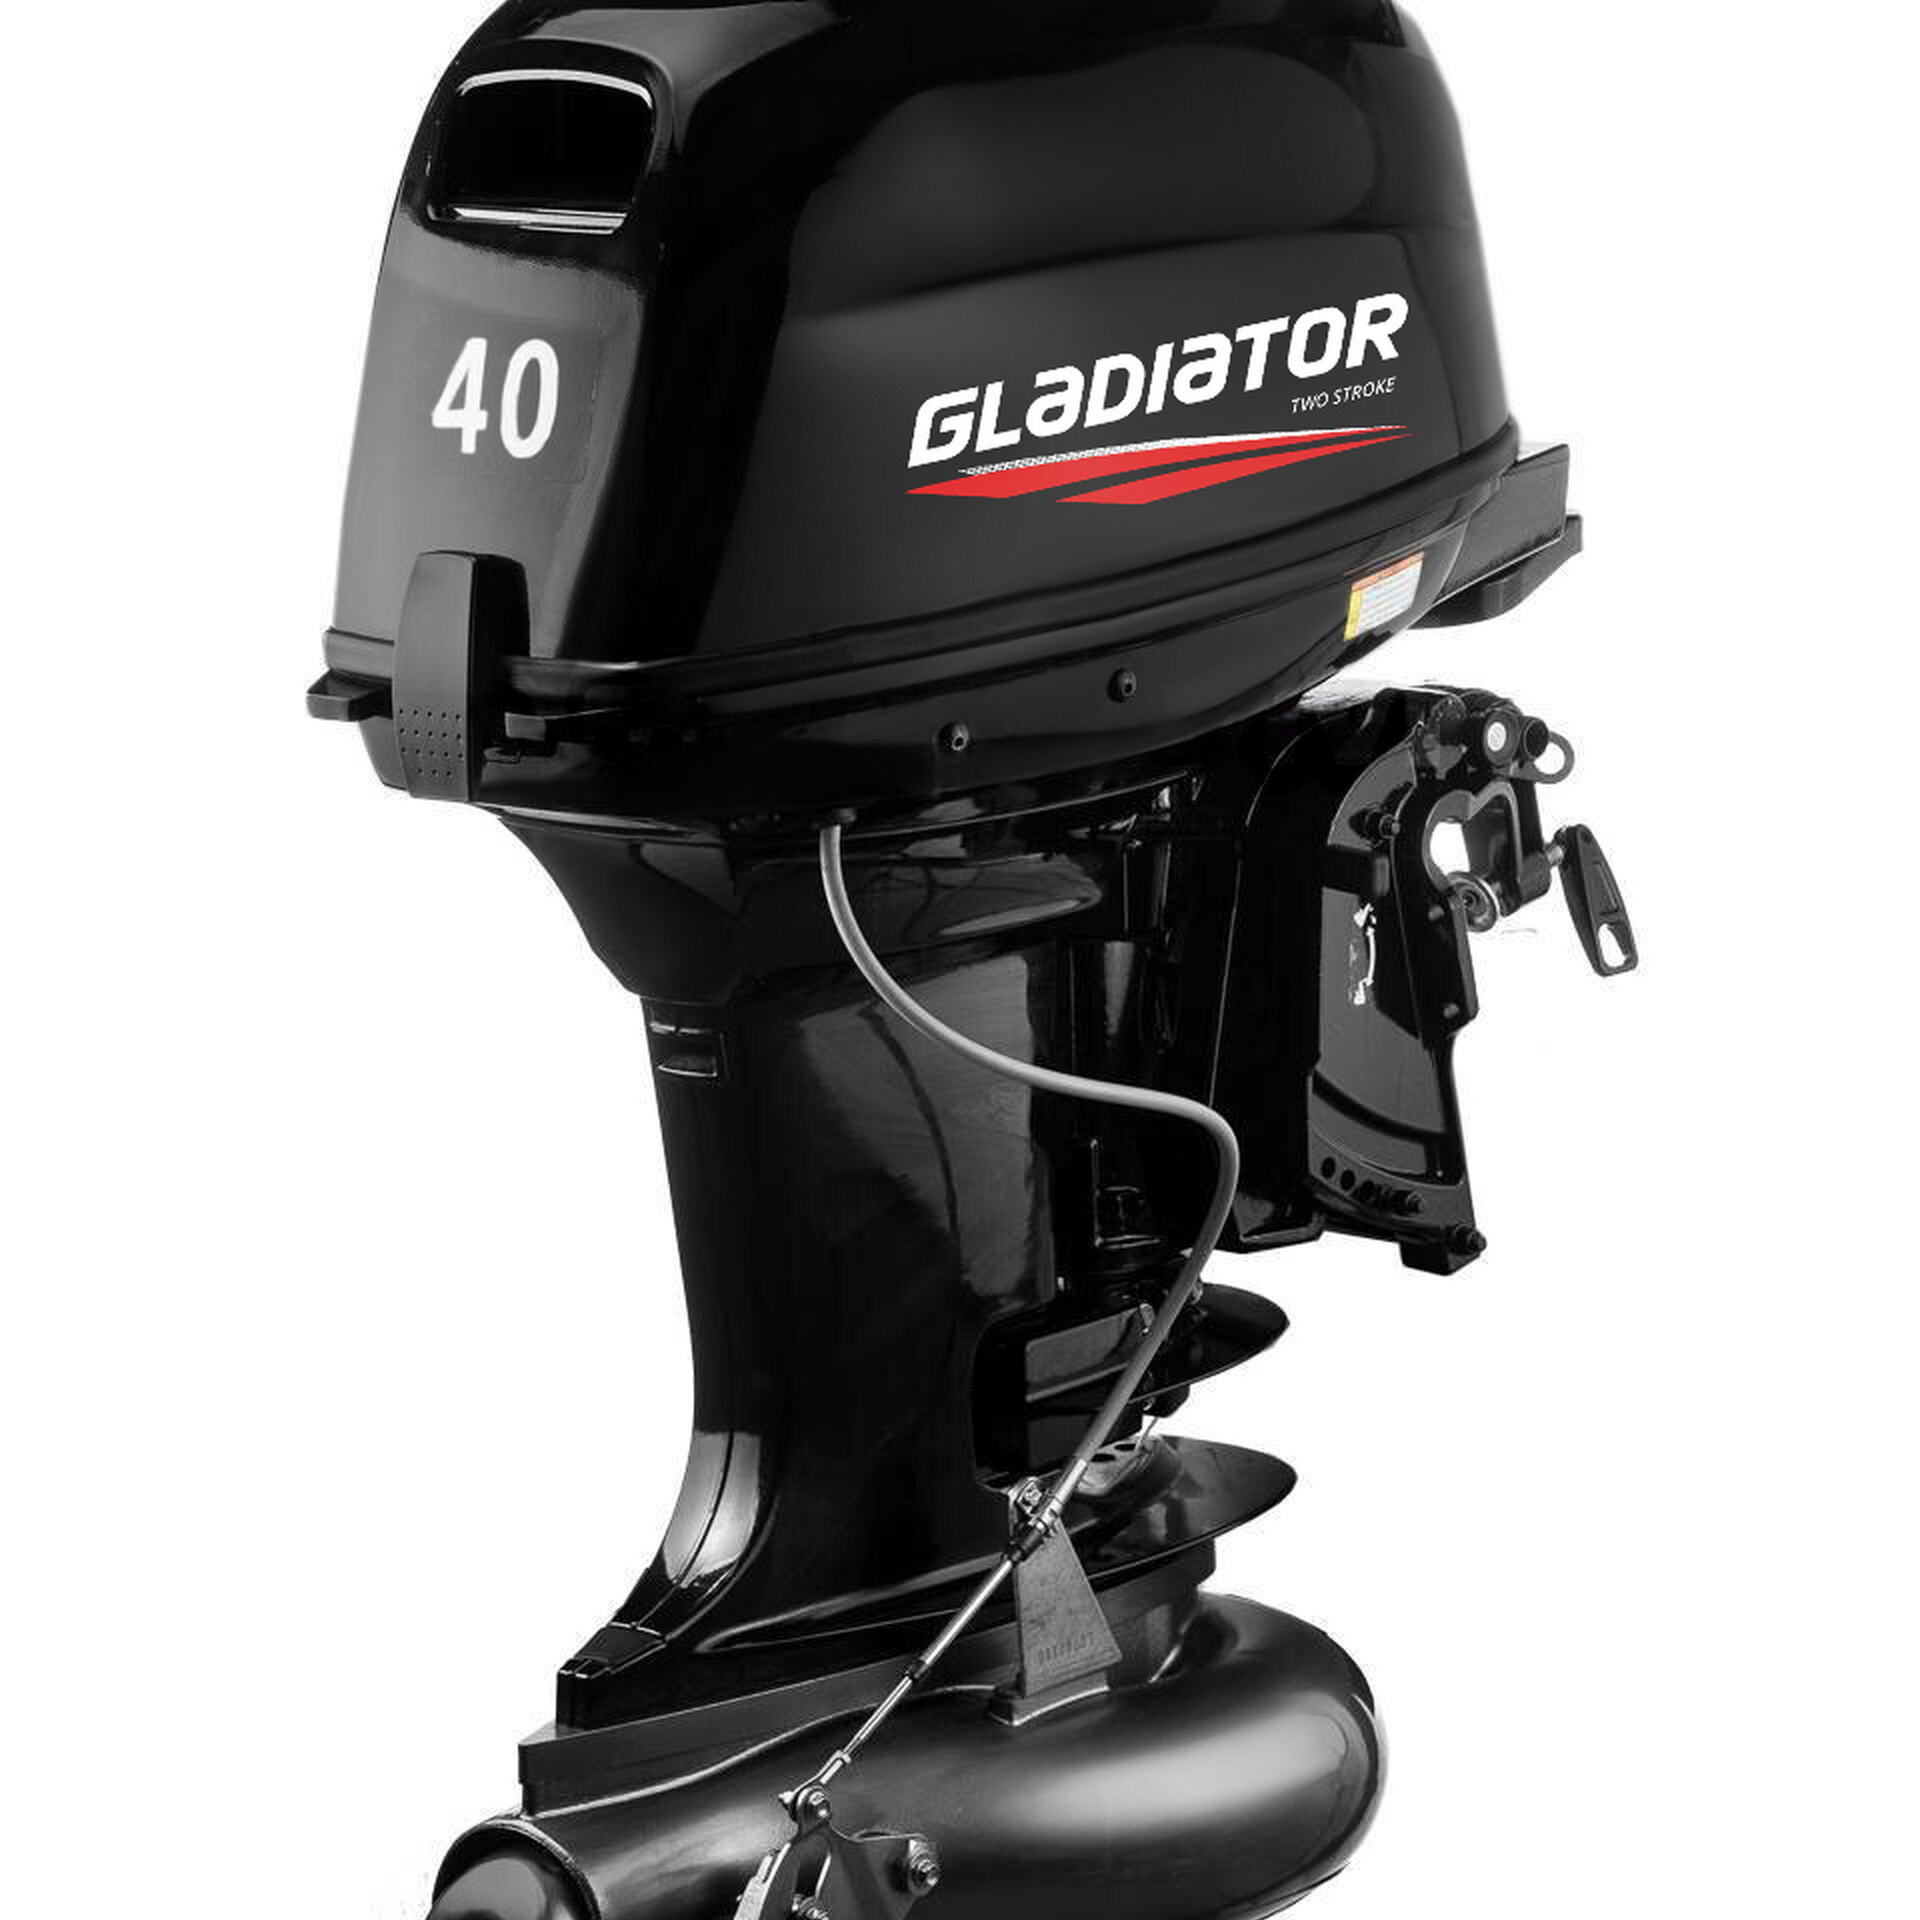 Мотор гладиатор обзор. Мотор Gladiator g40fhs (водомет). Лодочный мотор Гладиатор 40 водомет. Лодочный мотор Gladiator g9.9fhs водомет. Gladiator g40fh (водомет) производитель.